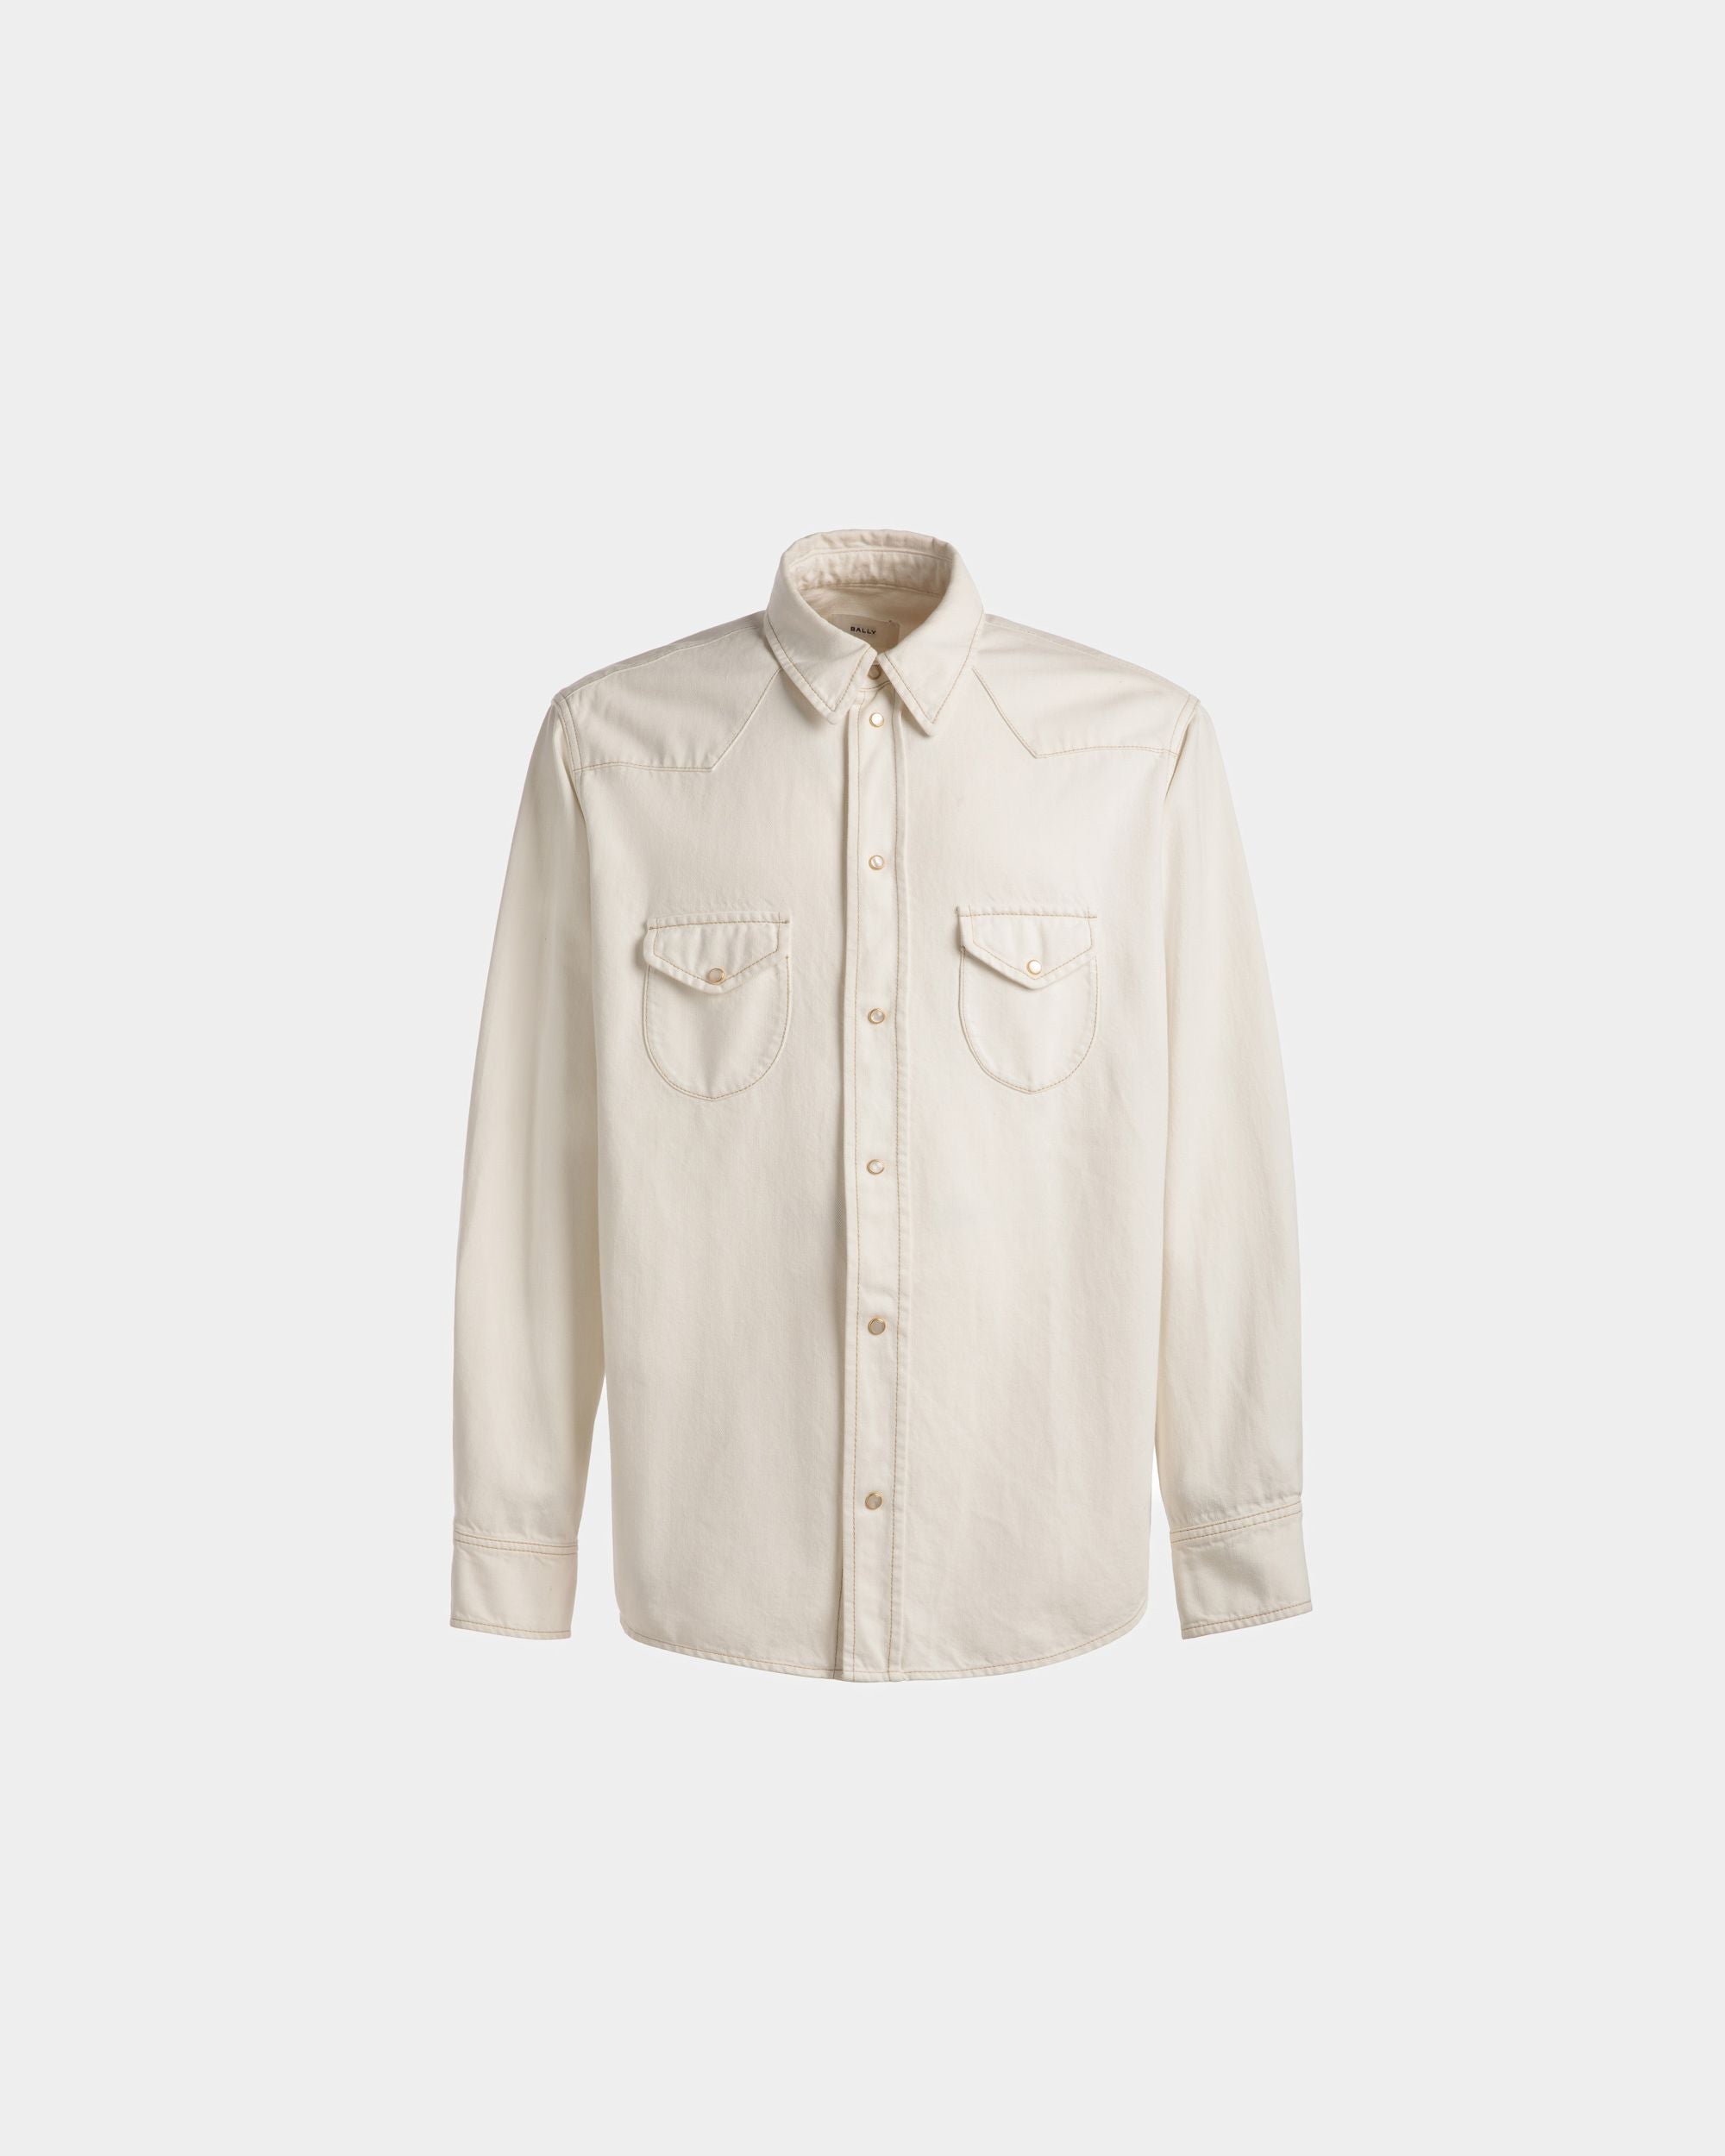 Bleached Denim Shirt | Men's Shirt | Bone Cotton | Bally | Still Life Front